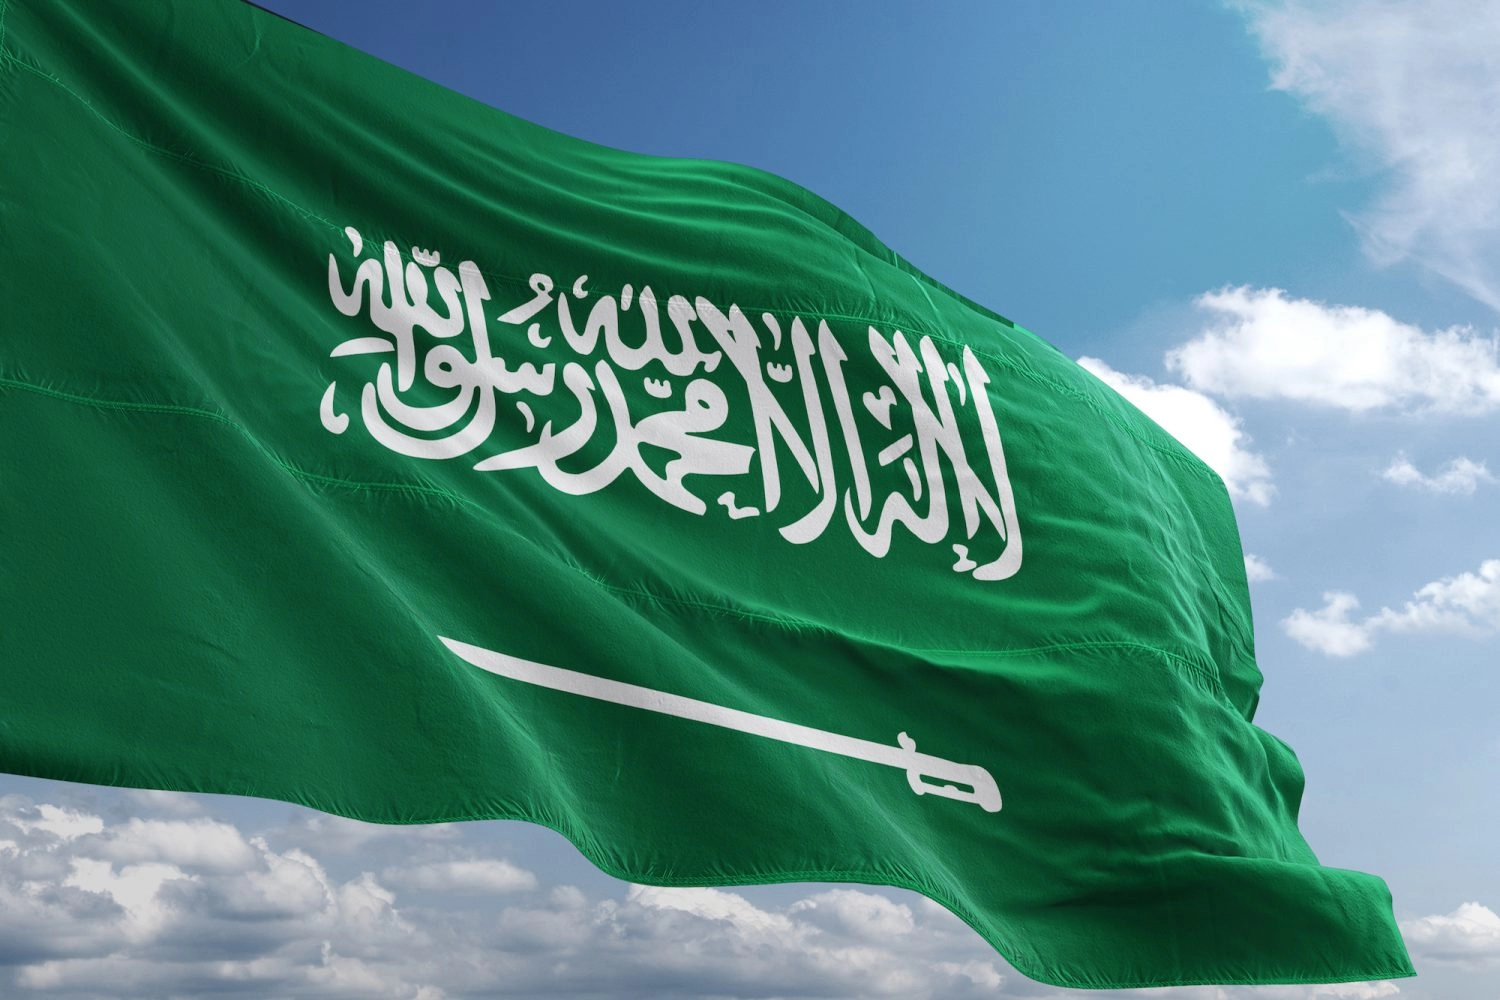 وظائف حراس امن براتب يصل الى 7,500 واعلى (لكافة الشهادات) في السعودية